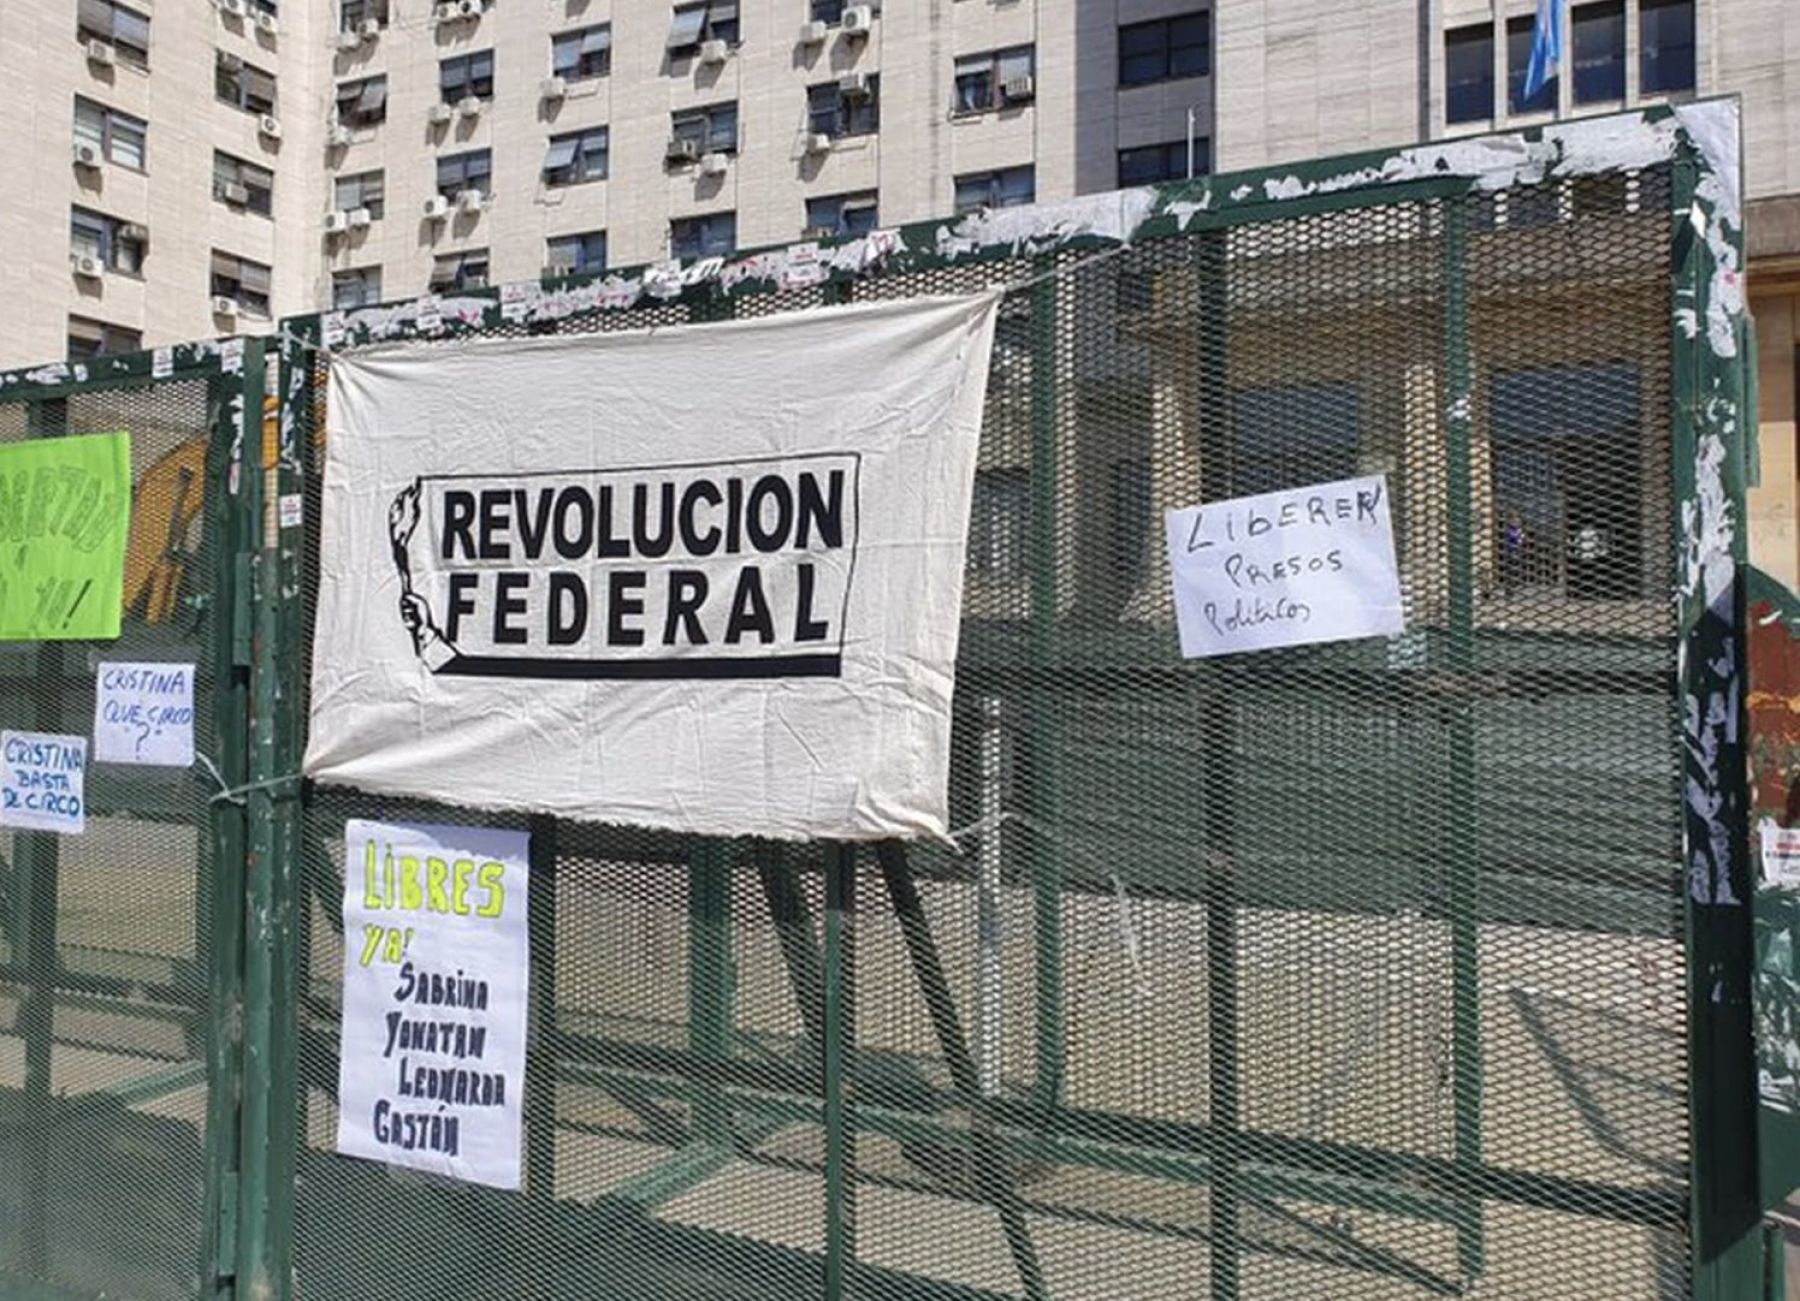 Días atrás se pedía por la liberación de los cuatro detenidos de Revolución Federal, ahora excarcelados.